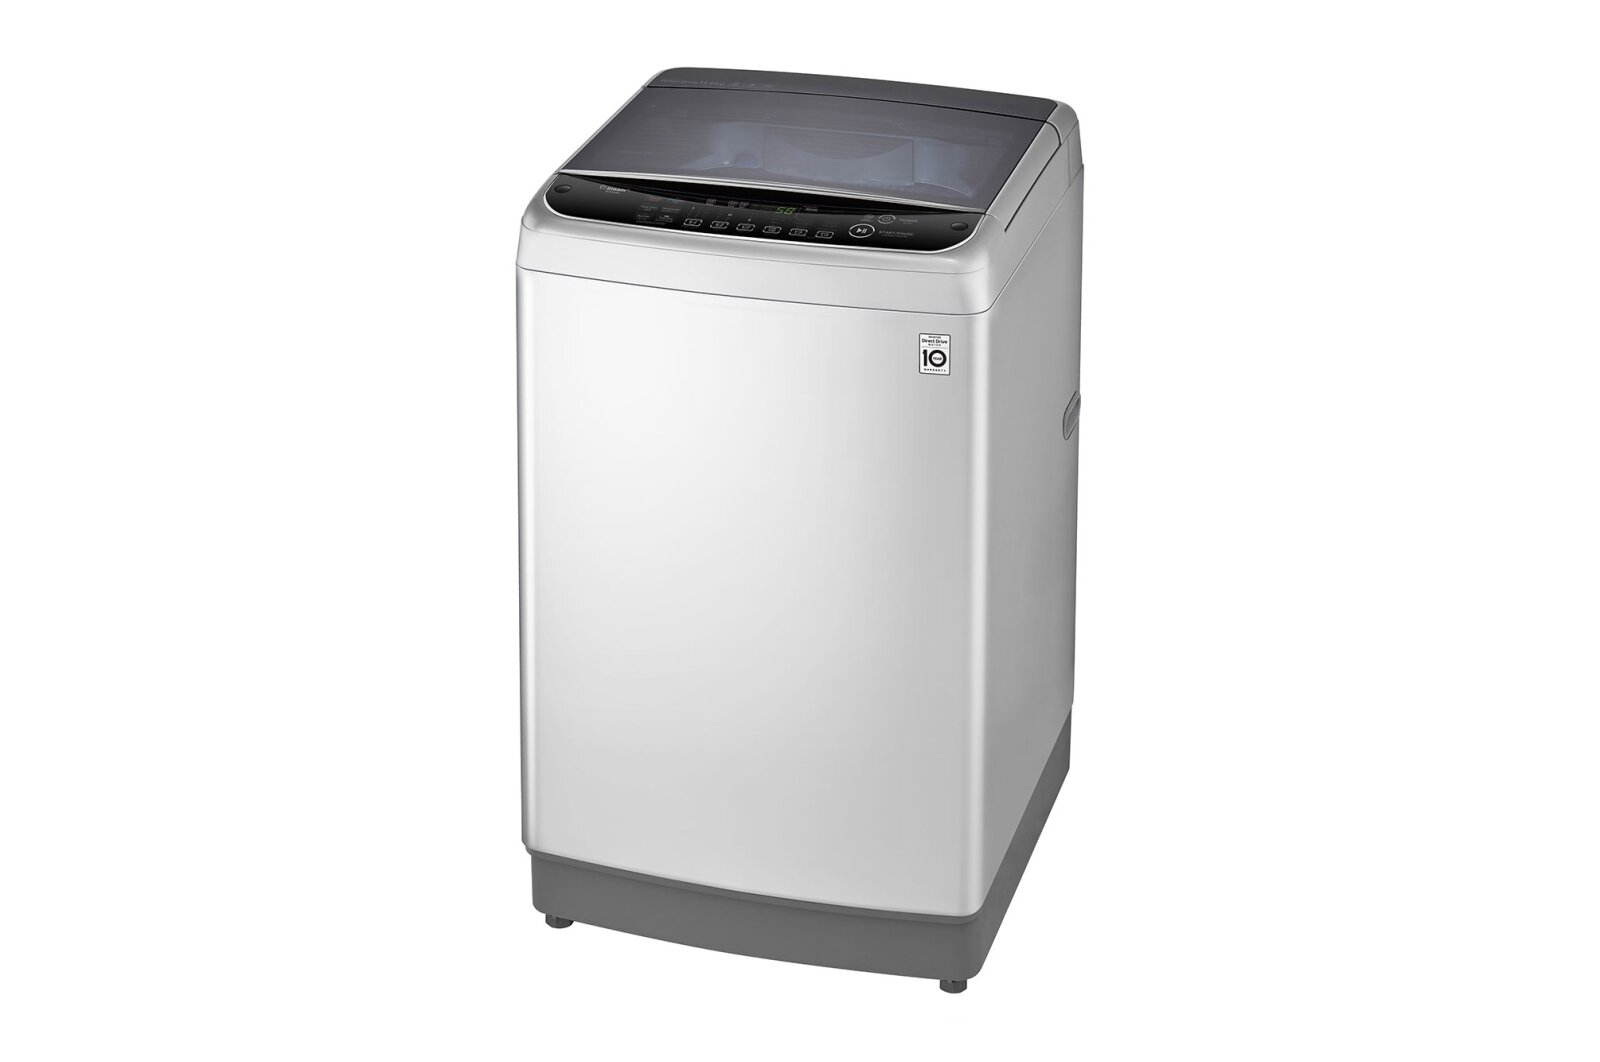 Tìm hiểu về công nghệ TurboDrum máy giặt LG